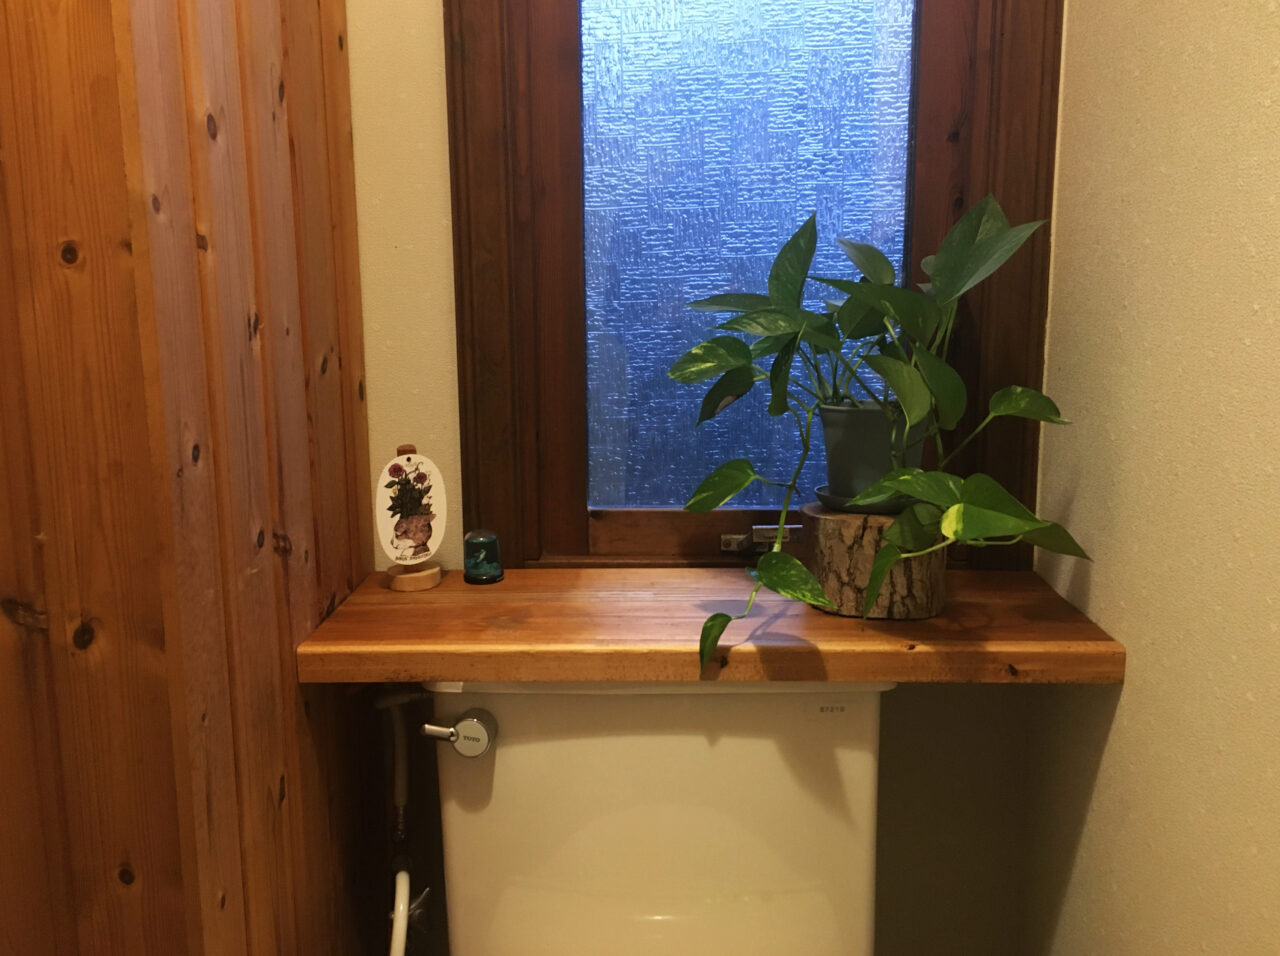 トイレタンクの上に設置した観葉植物用の棚板を修繕